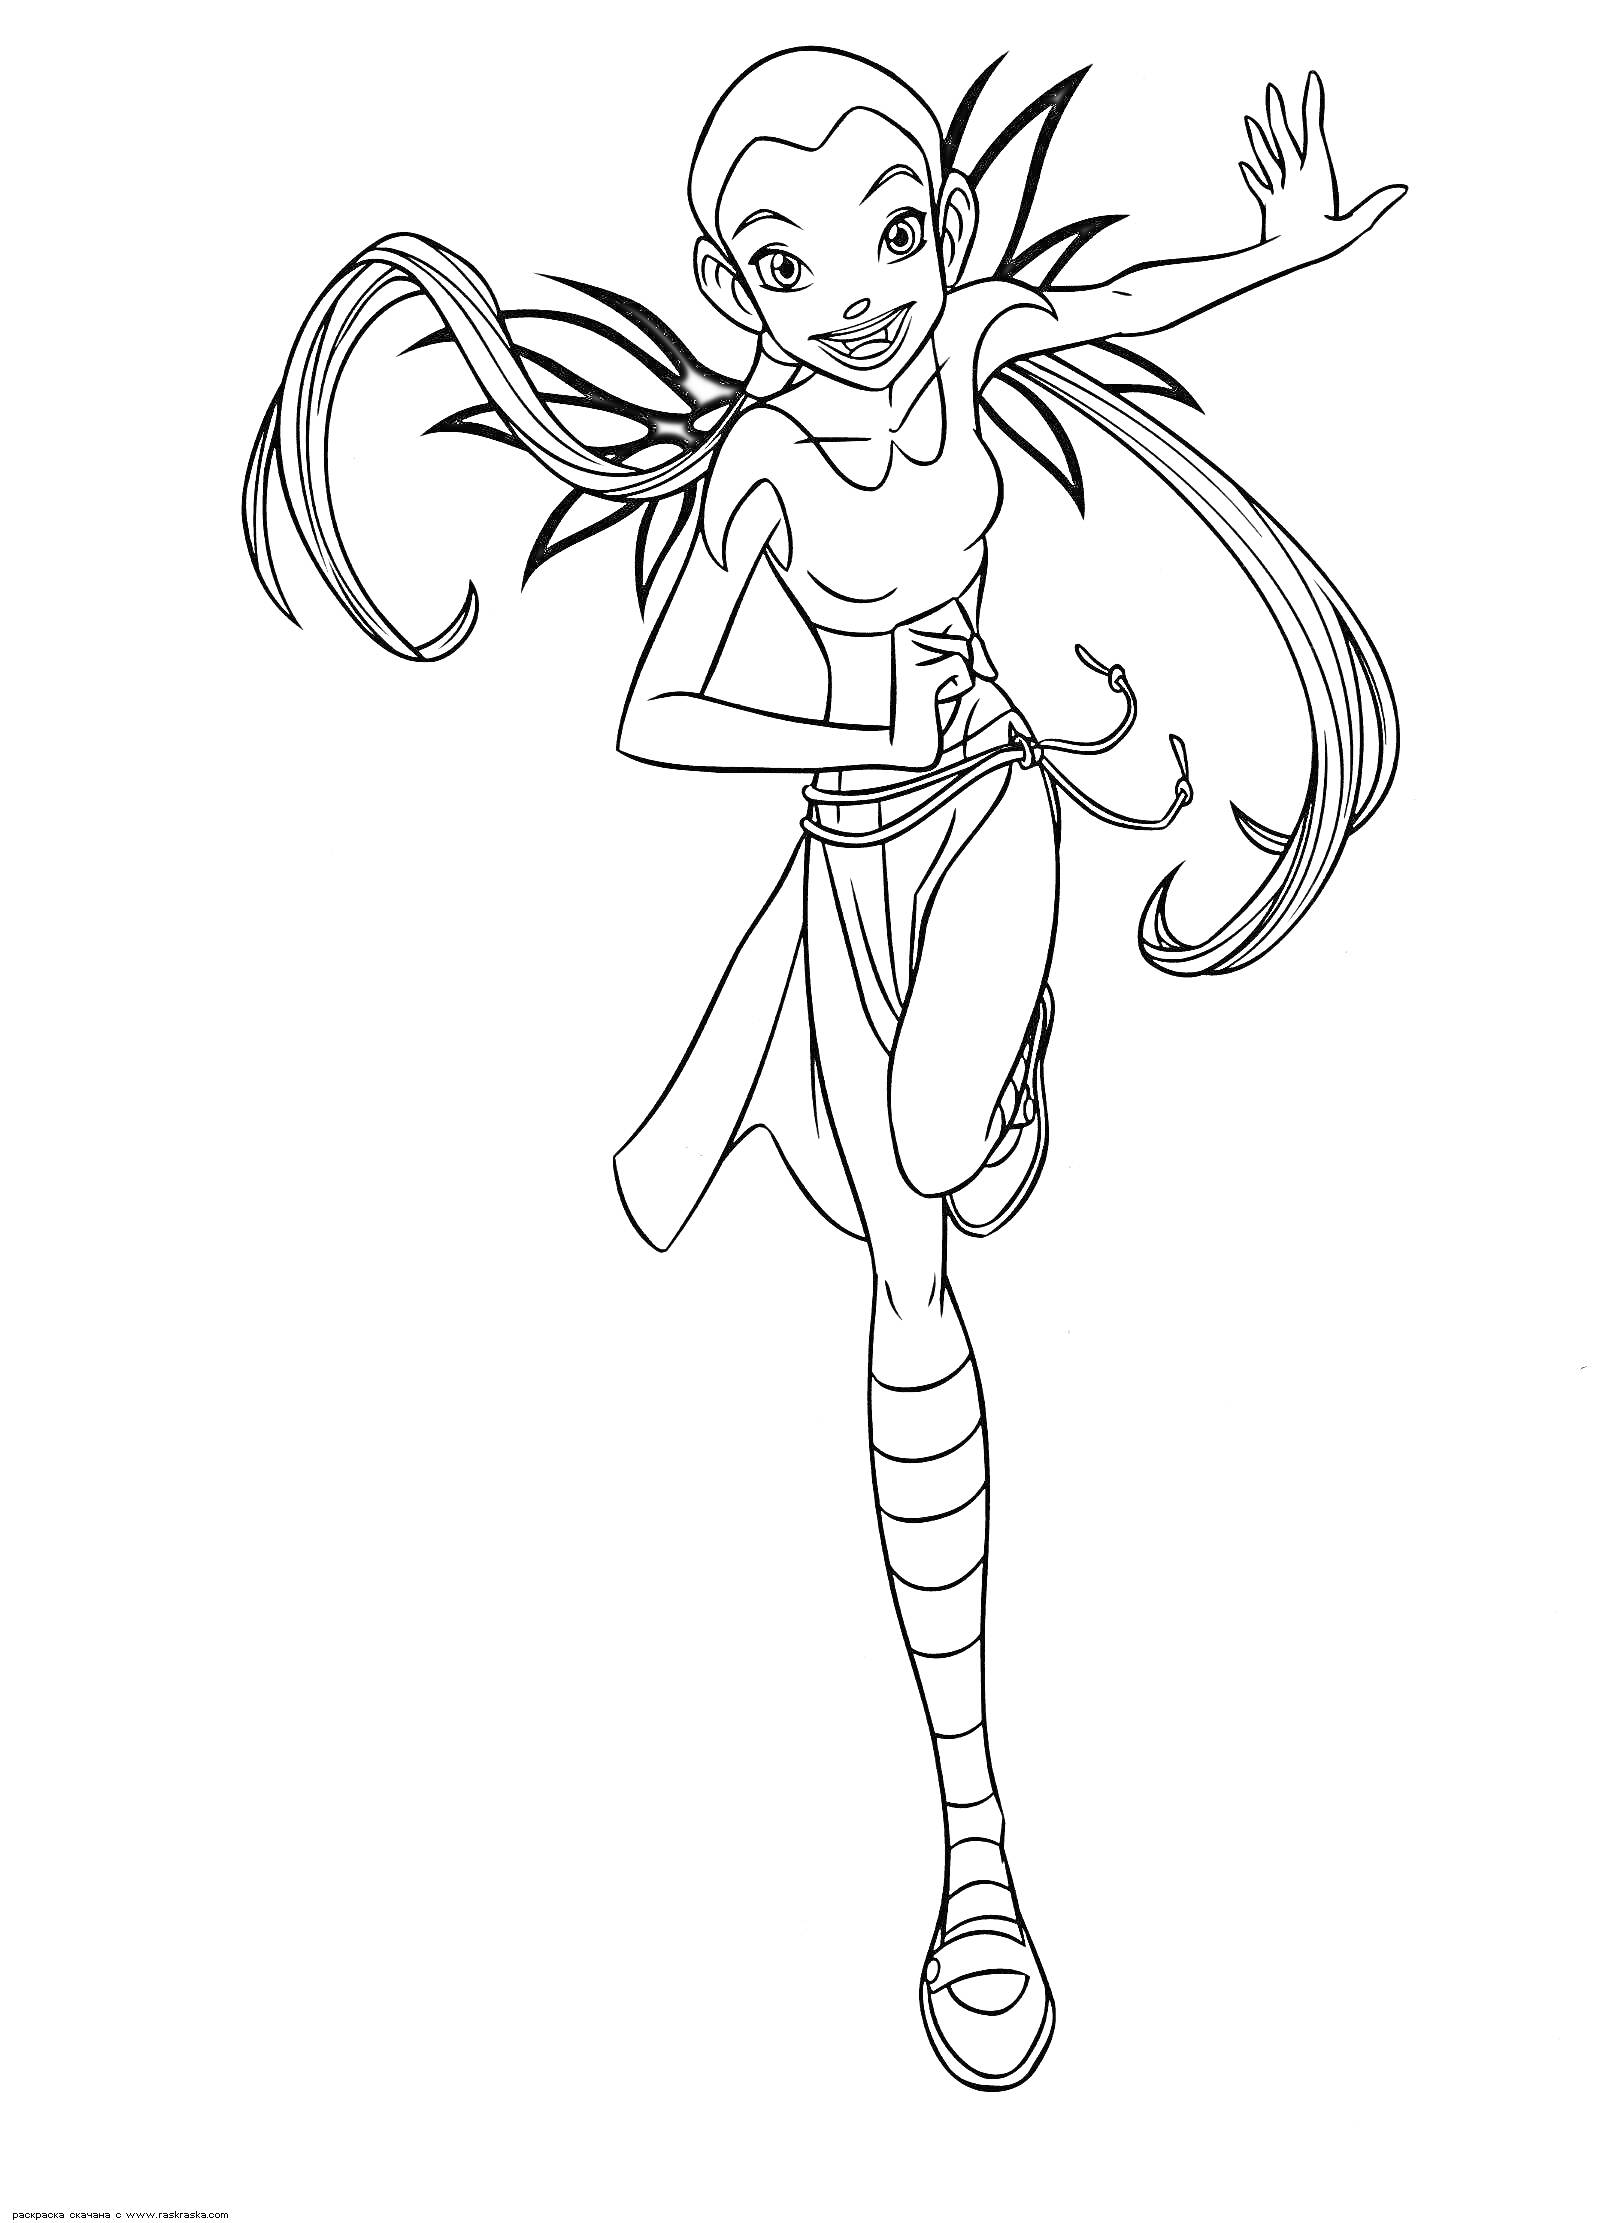 Раскраска Чародейка с длинными волосами и крыльями в прыжке